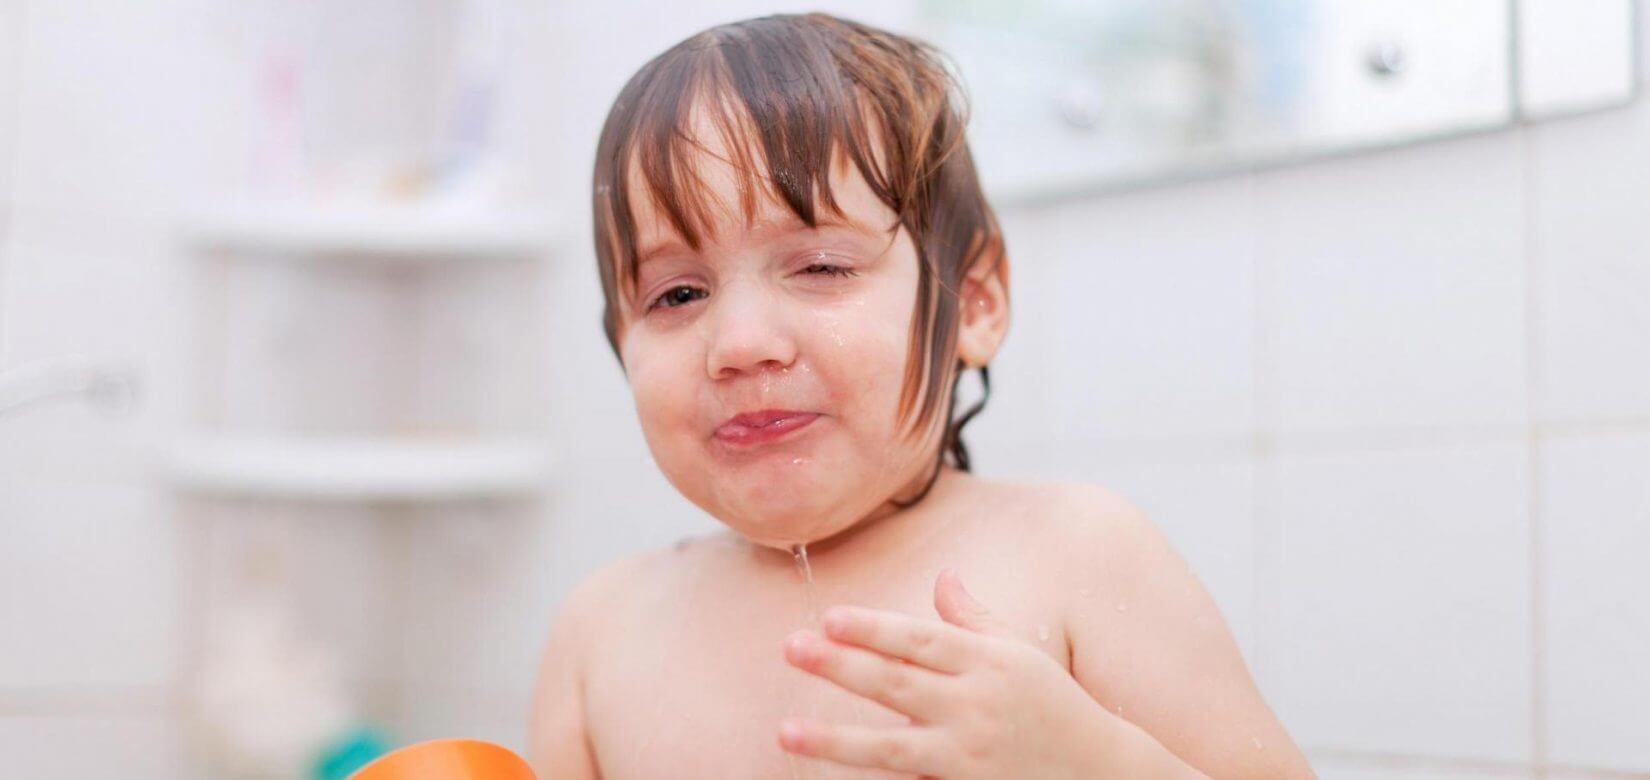 Είναι φυσιολογικό το παιδί μου να πίνει νερό από τη μπανιέρα;